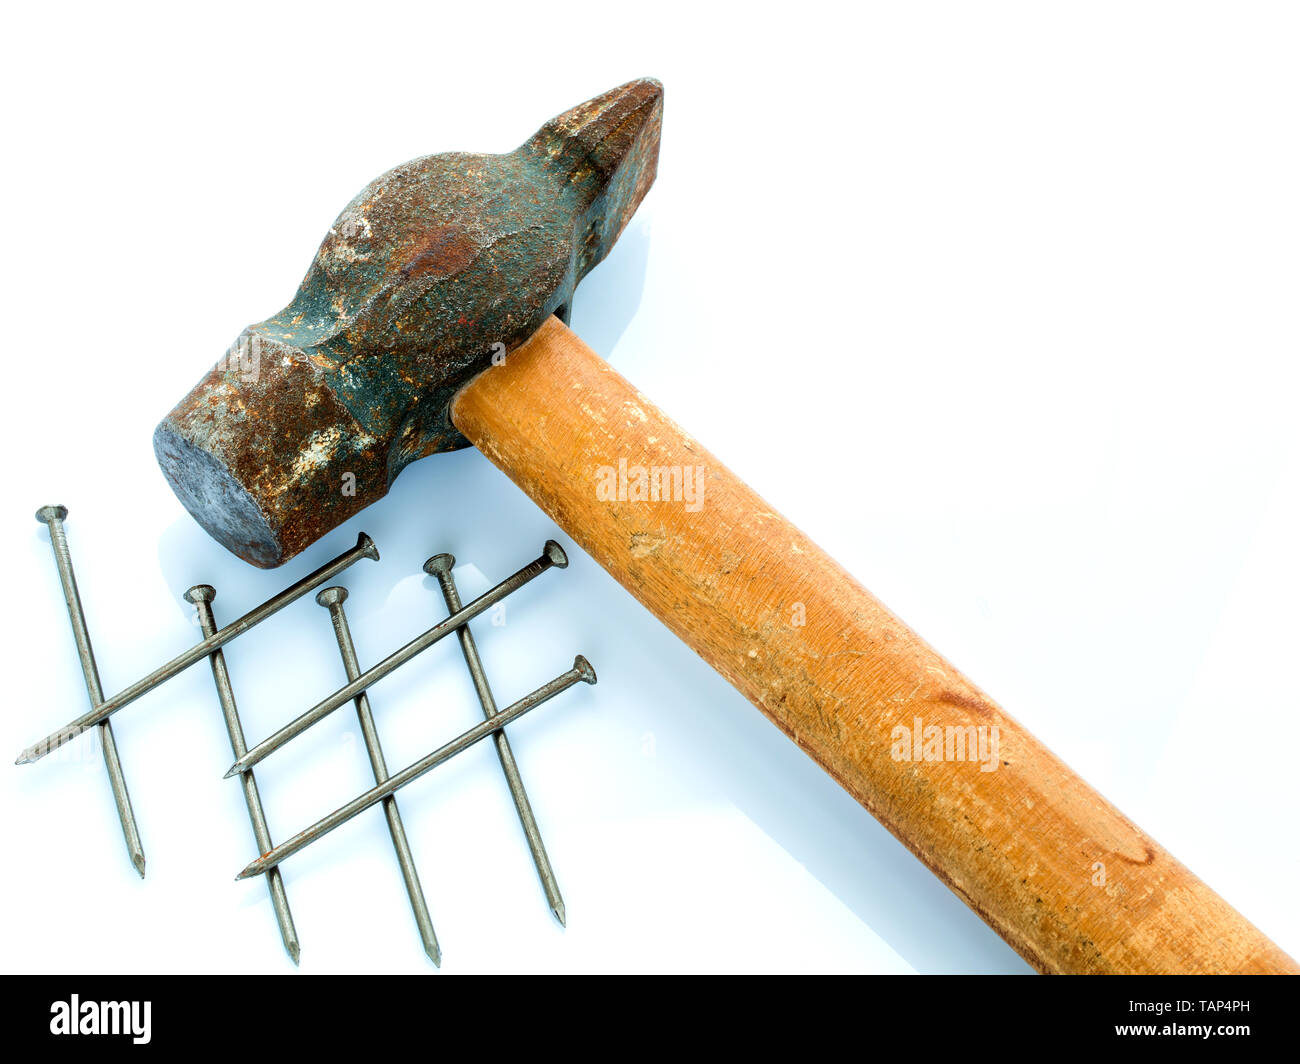 Eine alte Hammer mit einem hölzernen Handgriff und ein paar Nägel. Objekte auf einem hellen Hintergrund Stockfoto